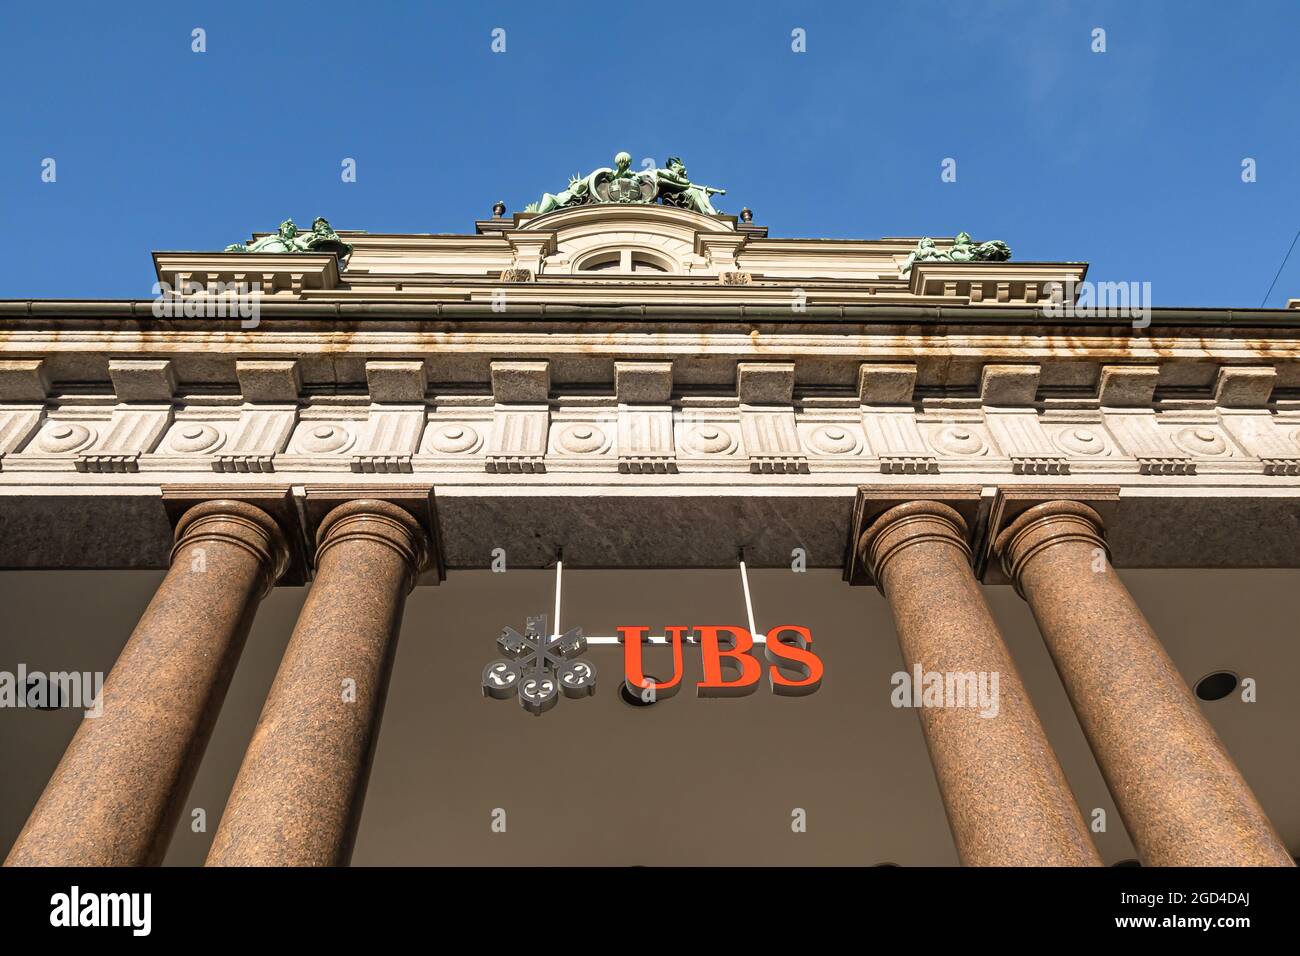 ST. GALLEN, SUISSE - 7 MAI 2020: Union Bank of Switzerland - UBS - banque multinationale d'investissement à Sankt Gallen Banque D'Images